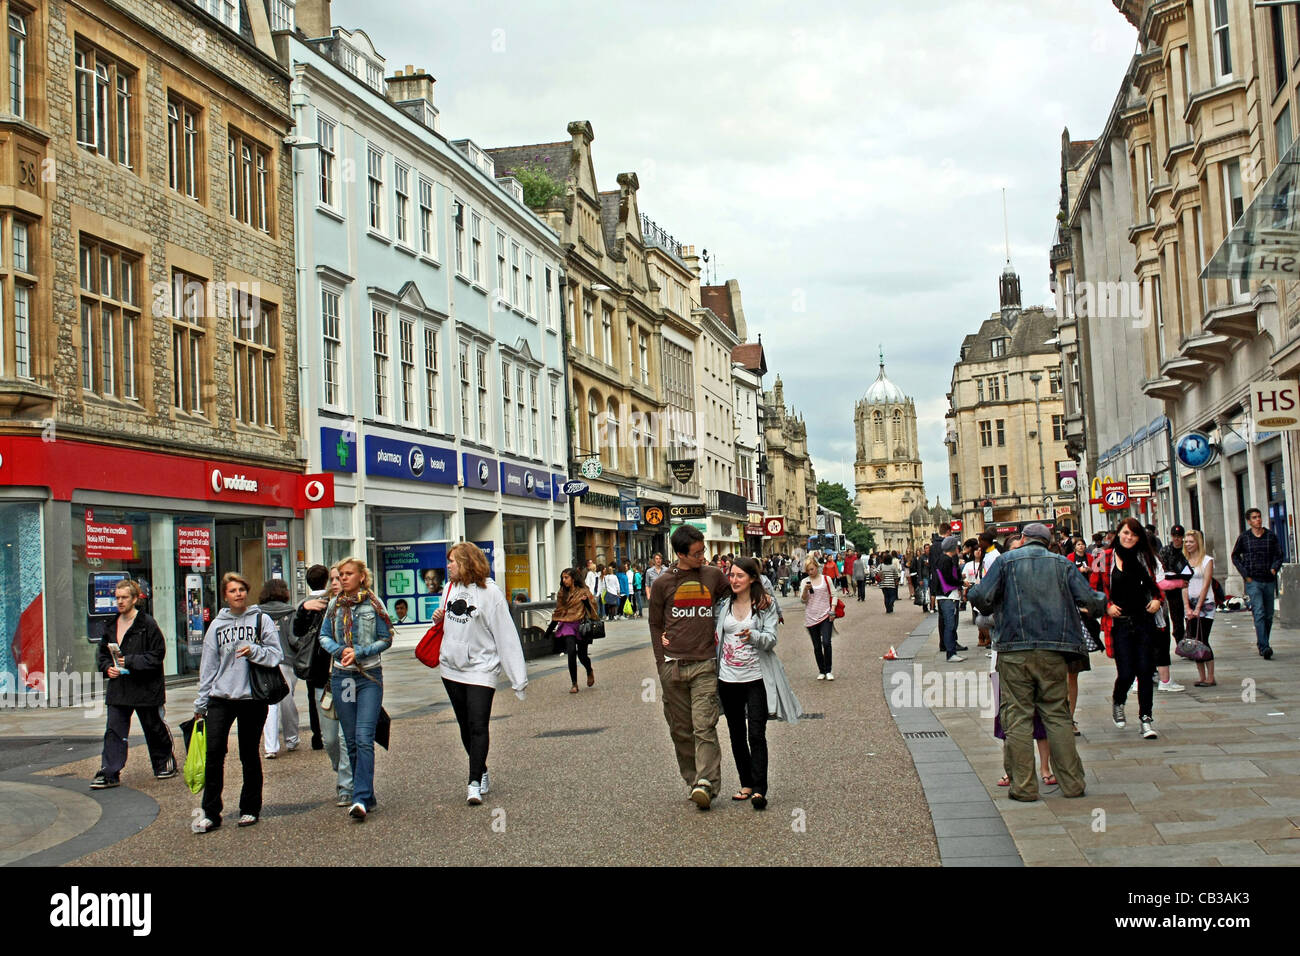 Gli amanti dello shopping nella zona pedonale, Cornmarket Street, Oxford, con Tom Torre del Christ Church College in background Foto Stock